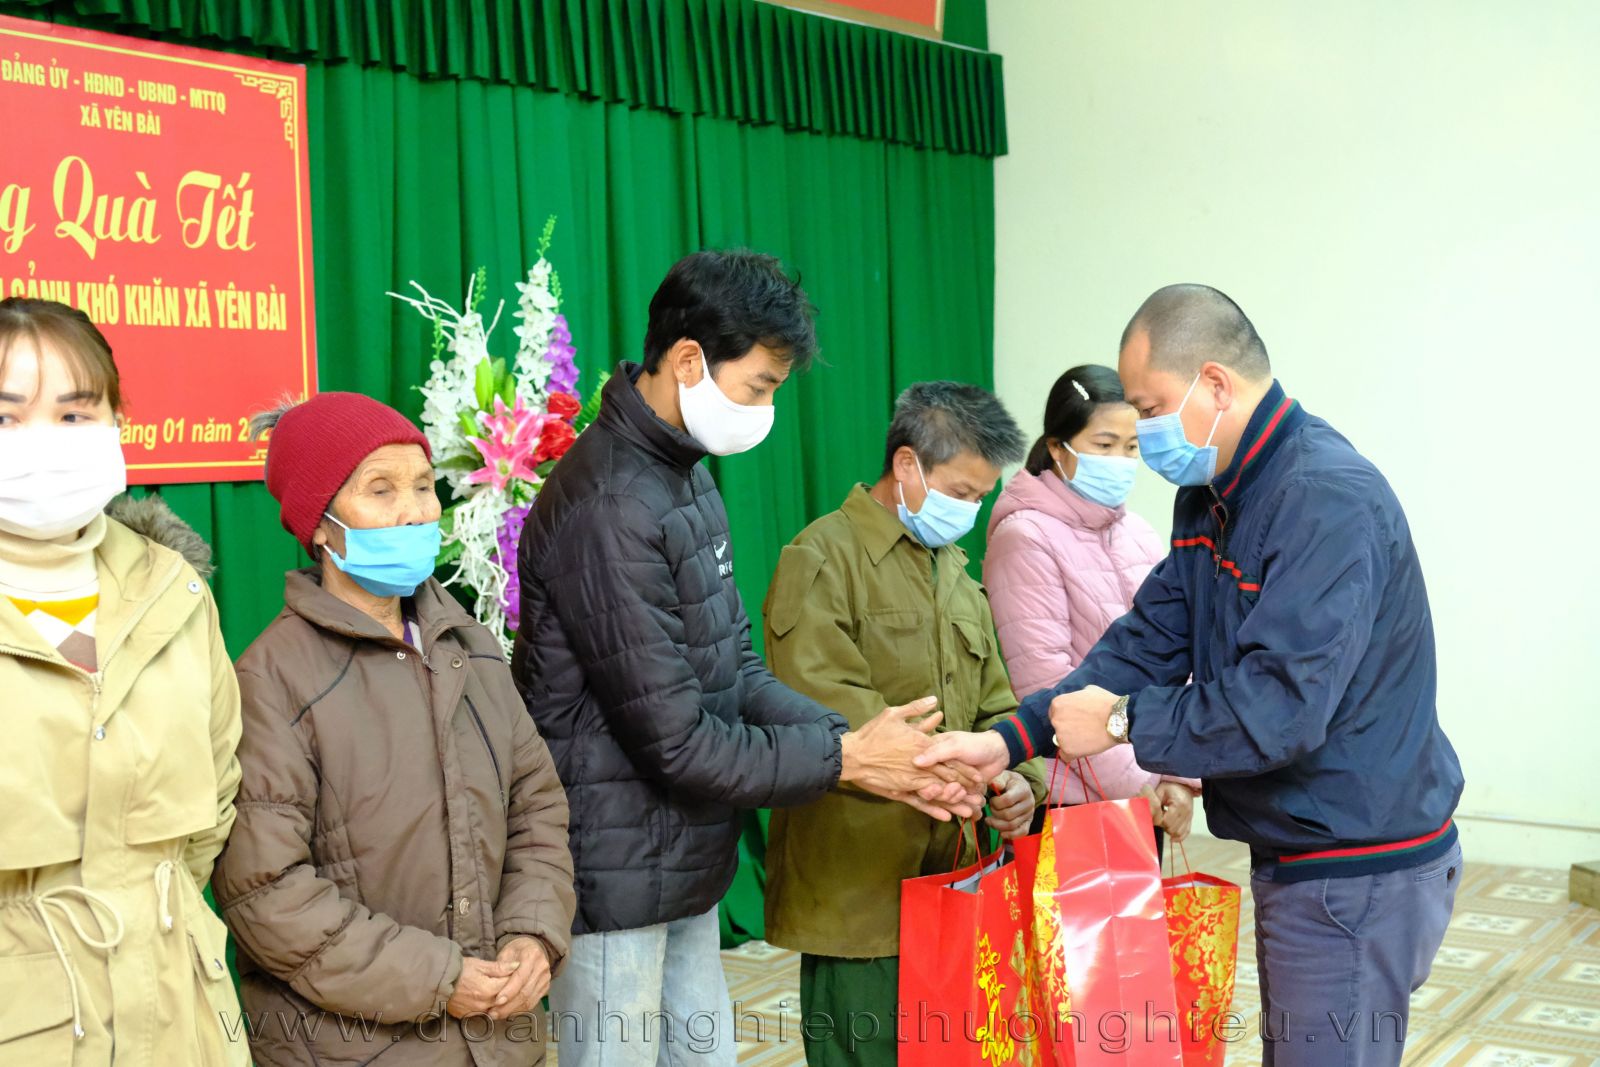 Tạp chí Doanh nghiệp và Thương hiệu cùng Doanh nghiệp đưa ''Xuân yêu thương'' đến các hộ gia đình khó khăn tại xã Yên Bài, huyện Ba vì, Hà Nội